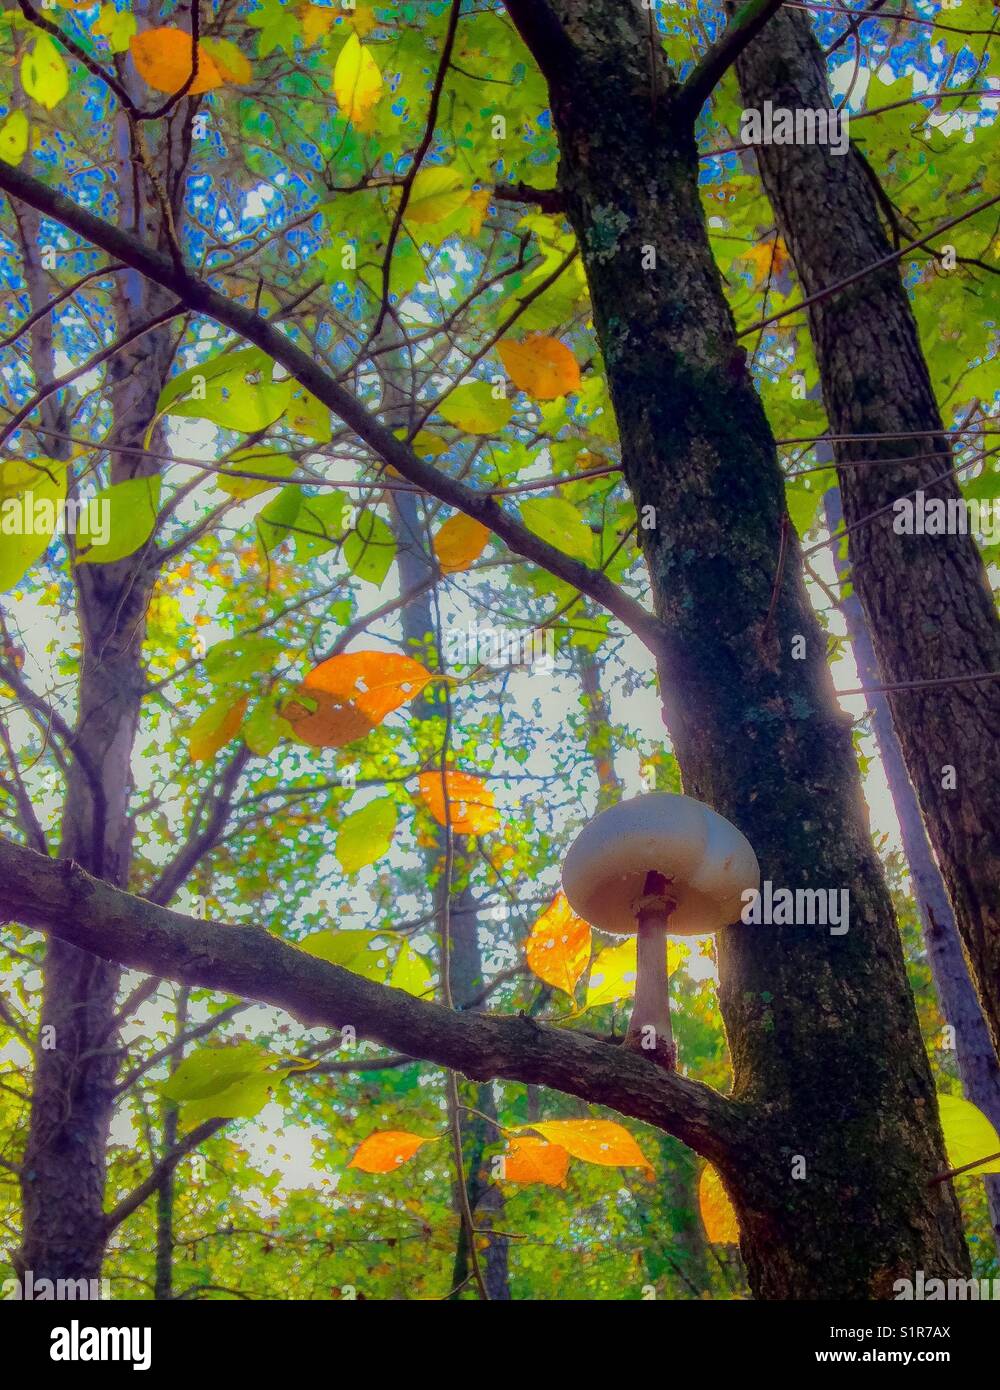 Champignons cultivés soutenu dans l'arbre avec les feuilles d'automne Banque D'Images